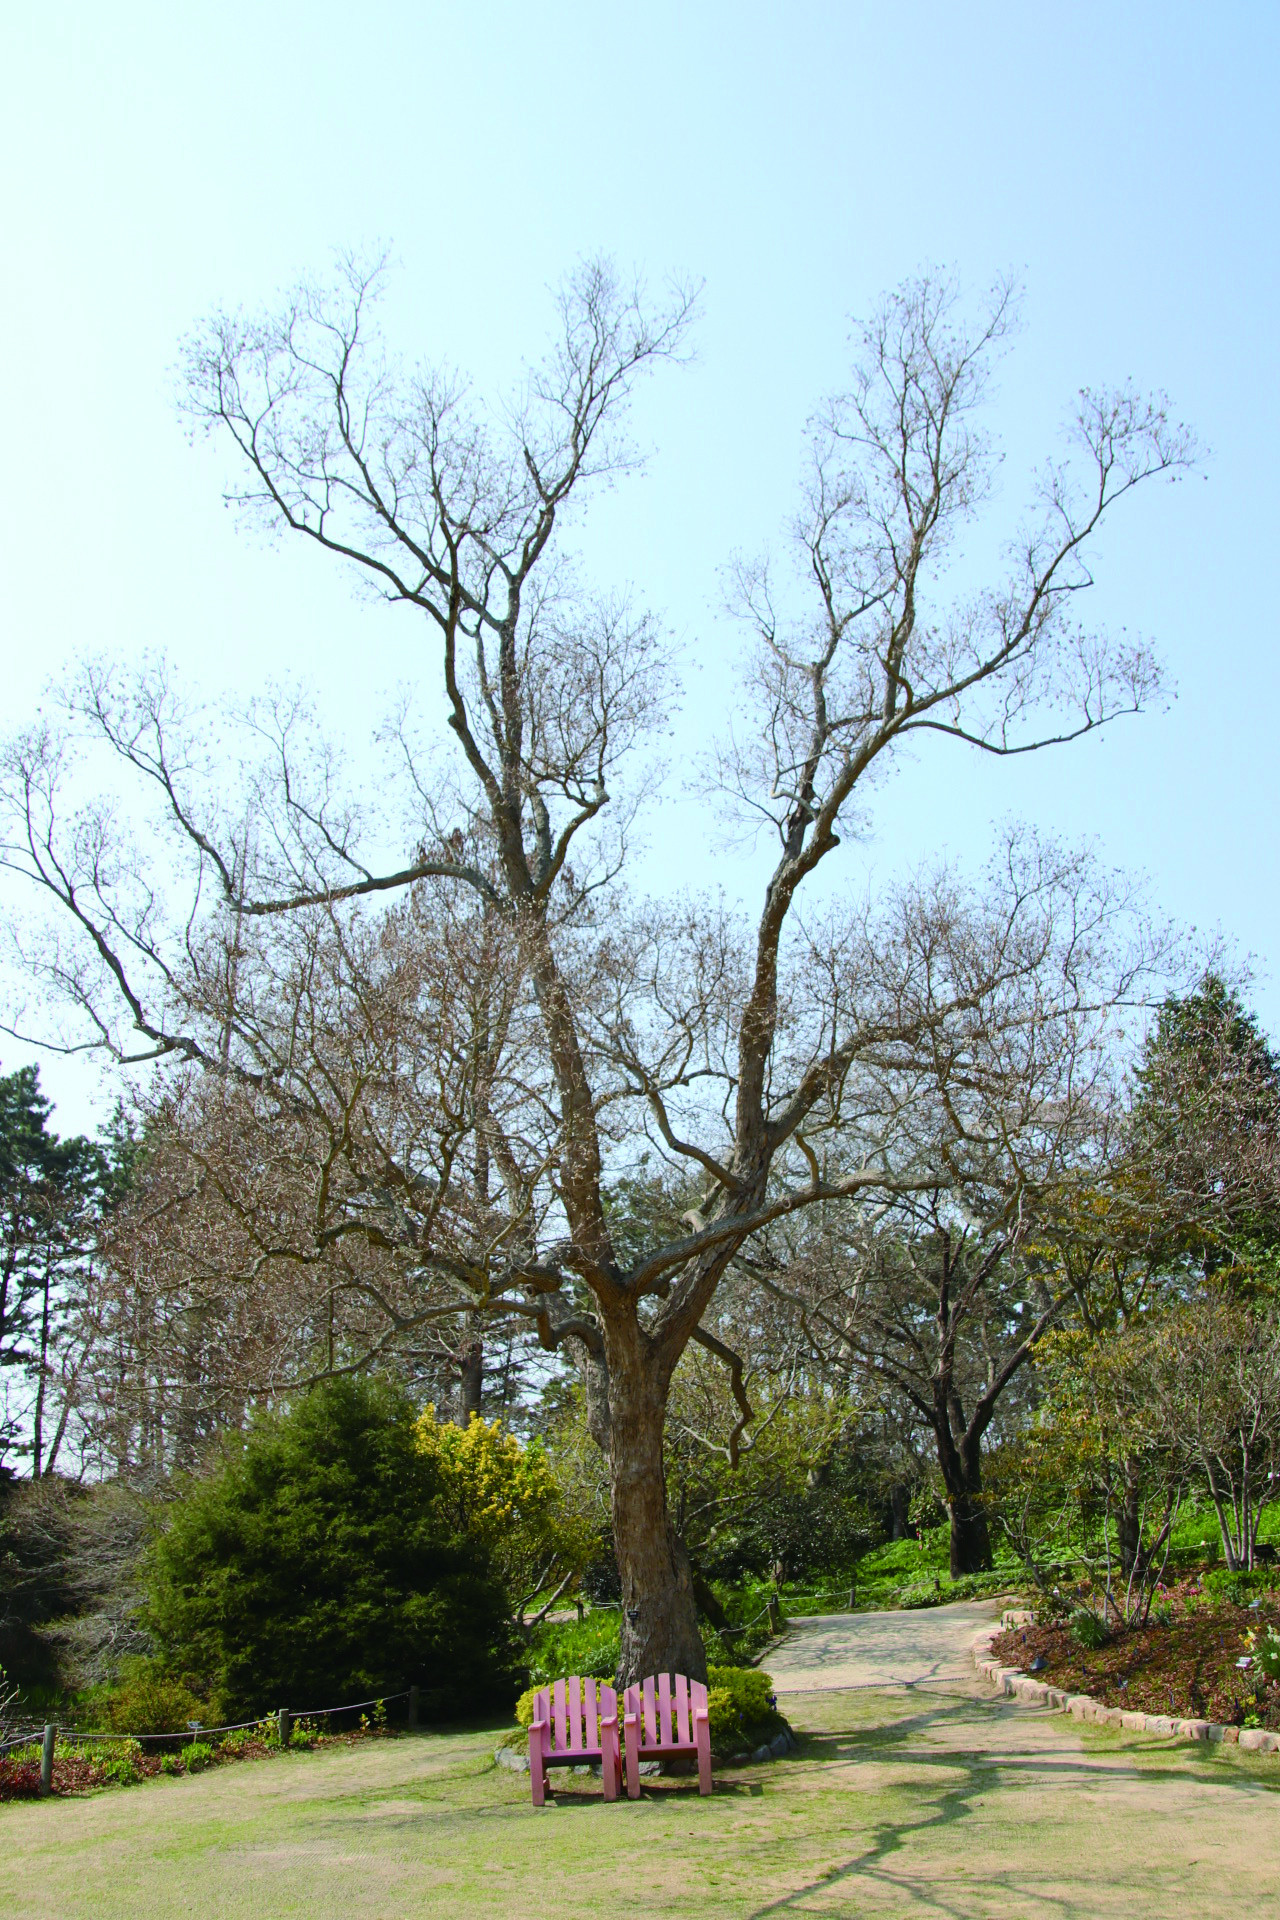 ▲천리포 수목원에 있는 오구나무. 국내에 식재된 나무 중에 가장 수형이 아름답다고 알려져 있다.